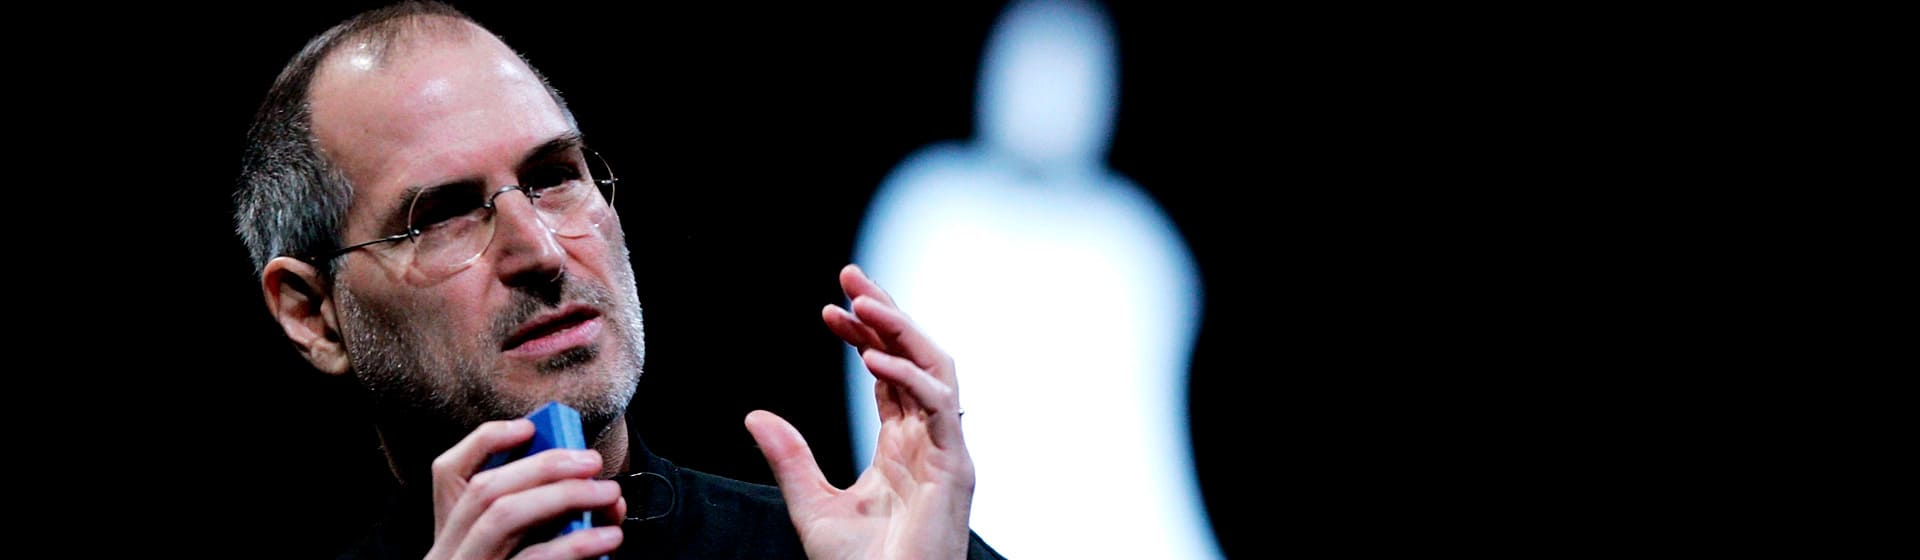 Стив Джобс - Мерч и одежда с атрибутикой